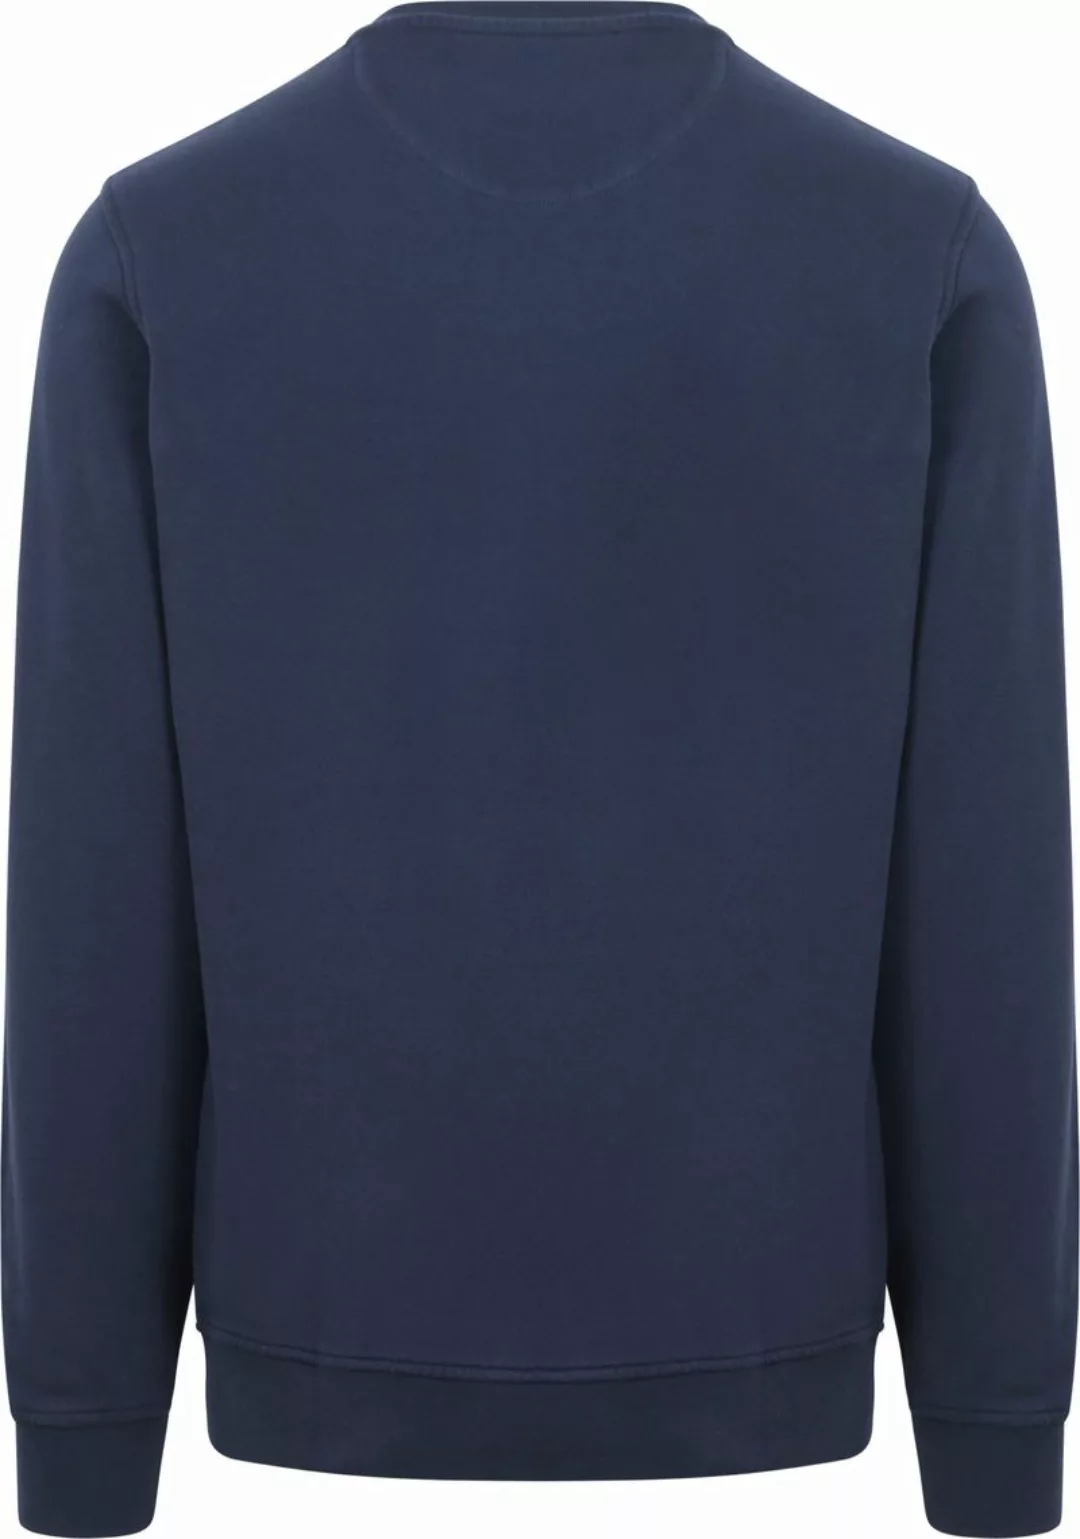 McGregor Essential Sweater Logo Navy - Größe 3XL günstig online kaufen